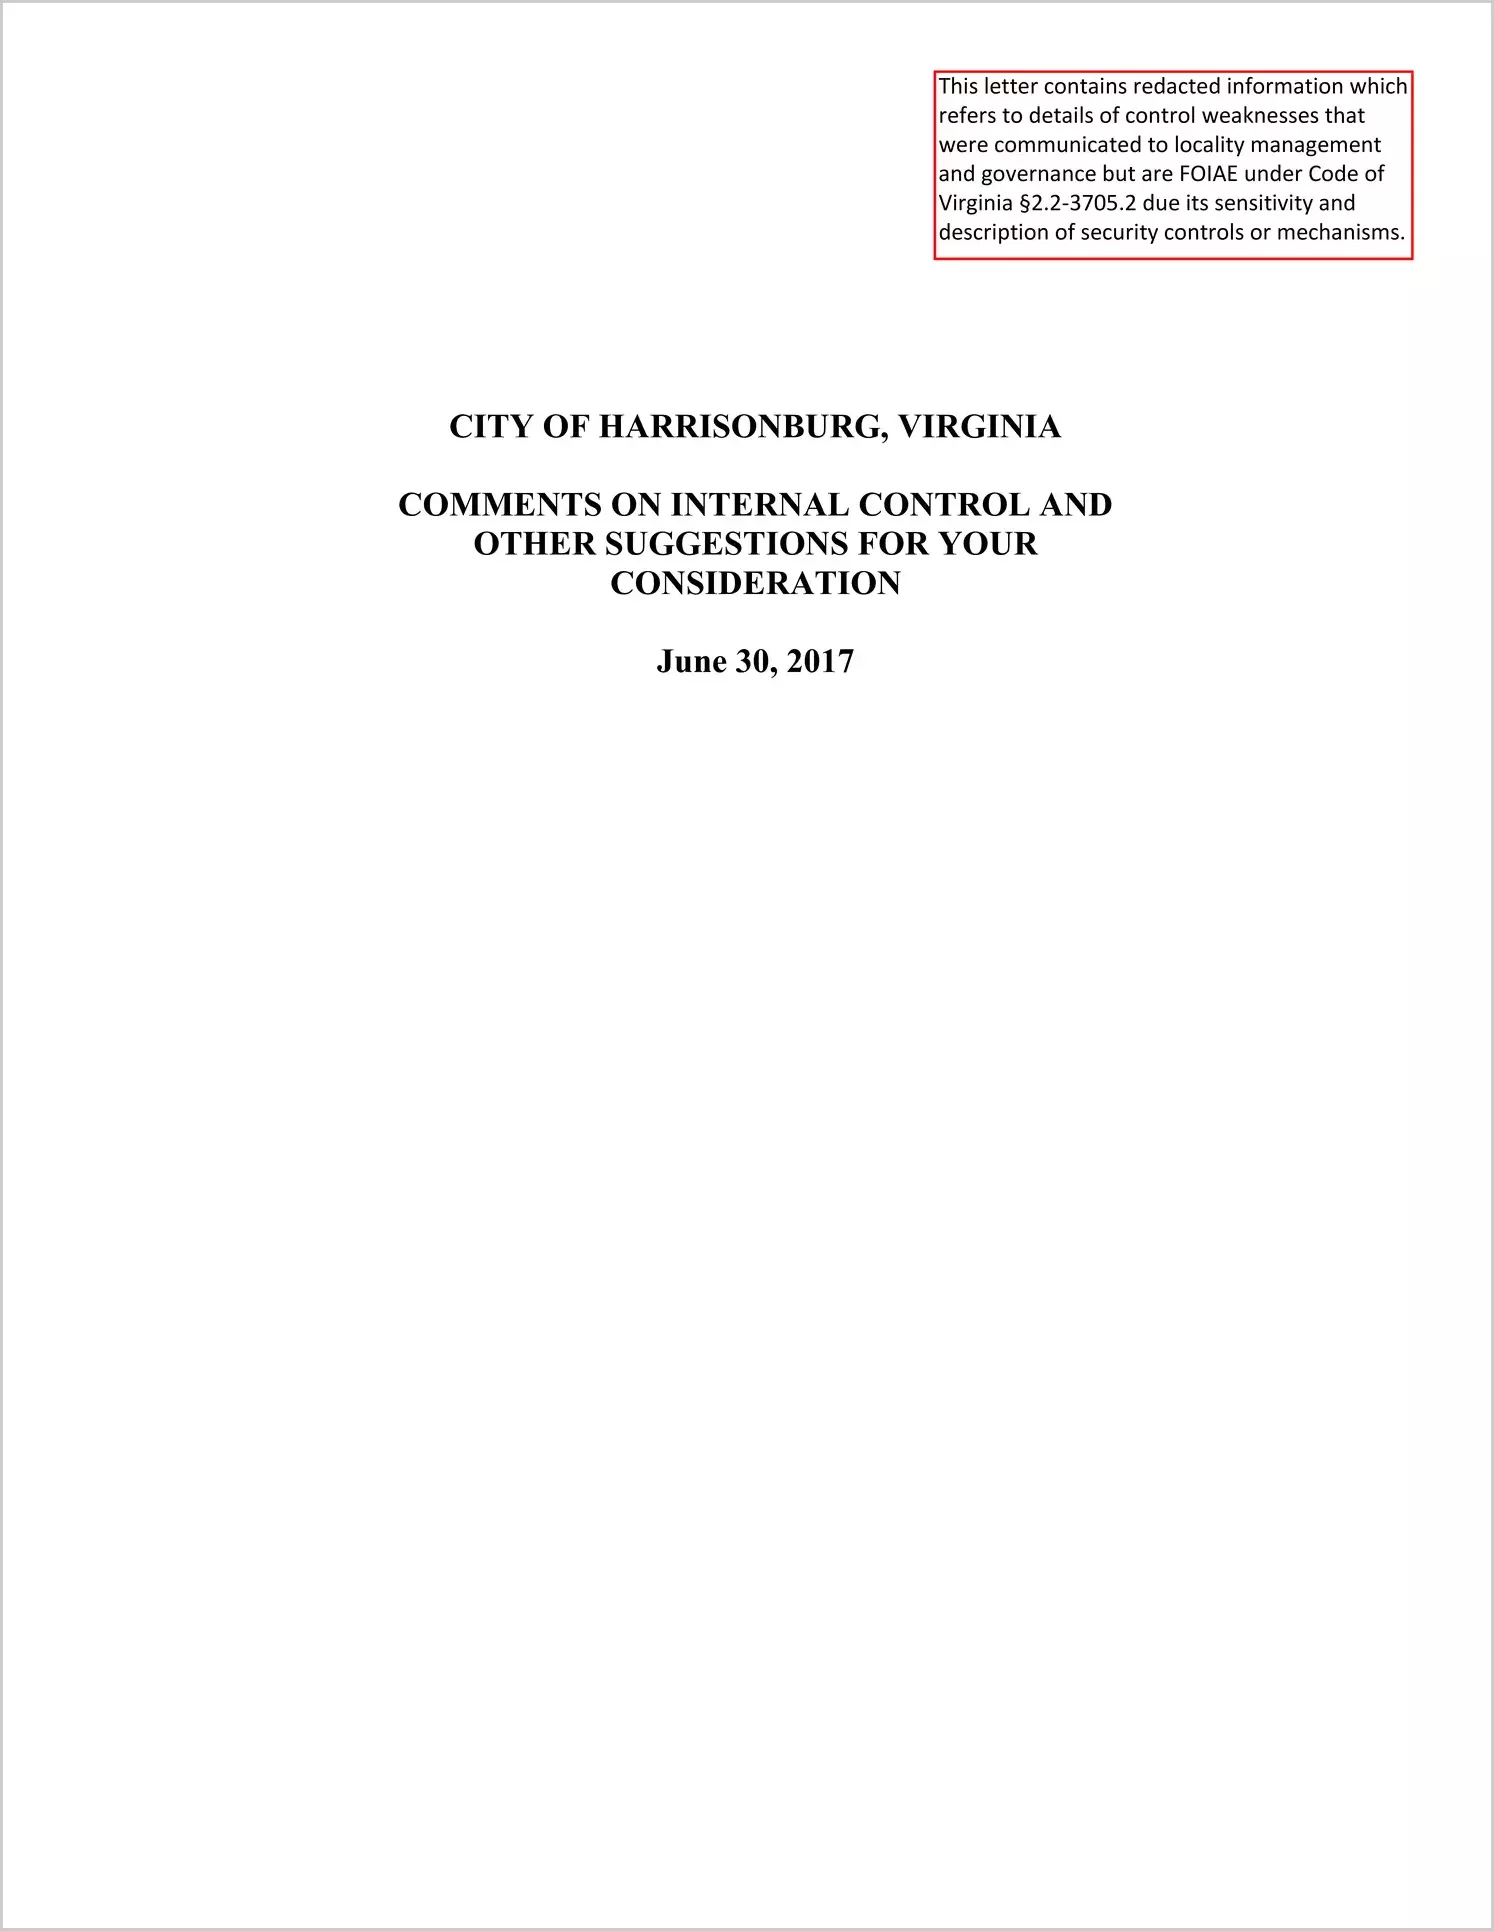 2017 Management Letter for City of Harrisonburg